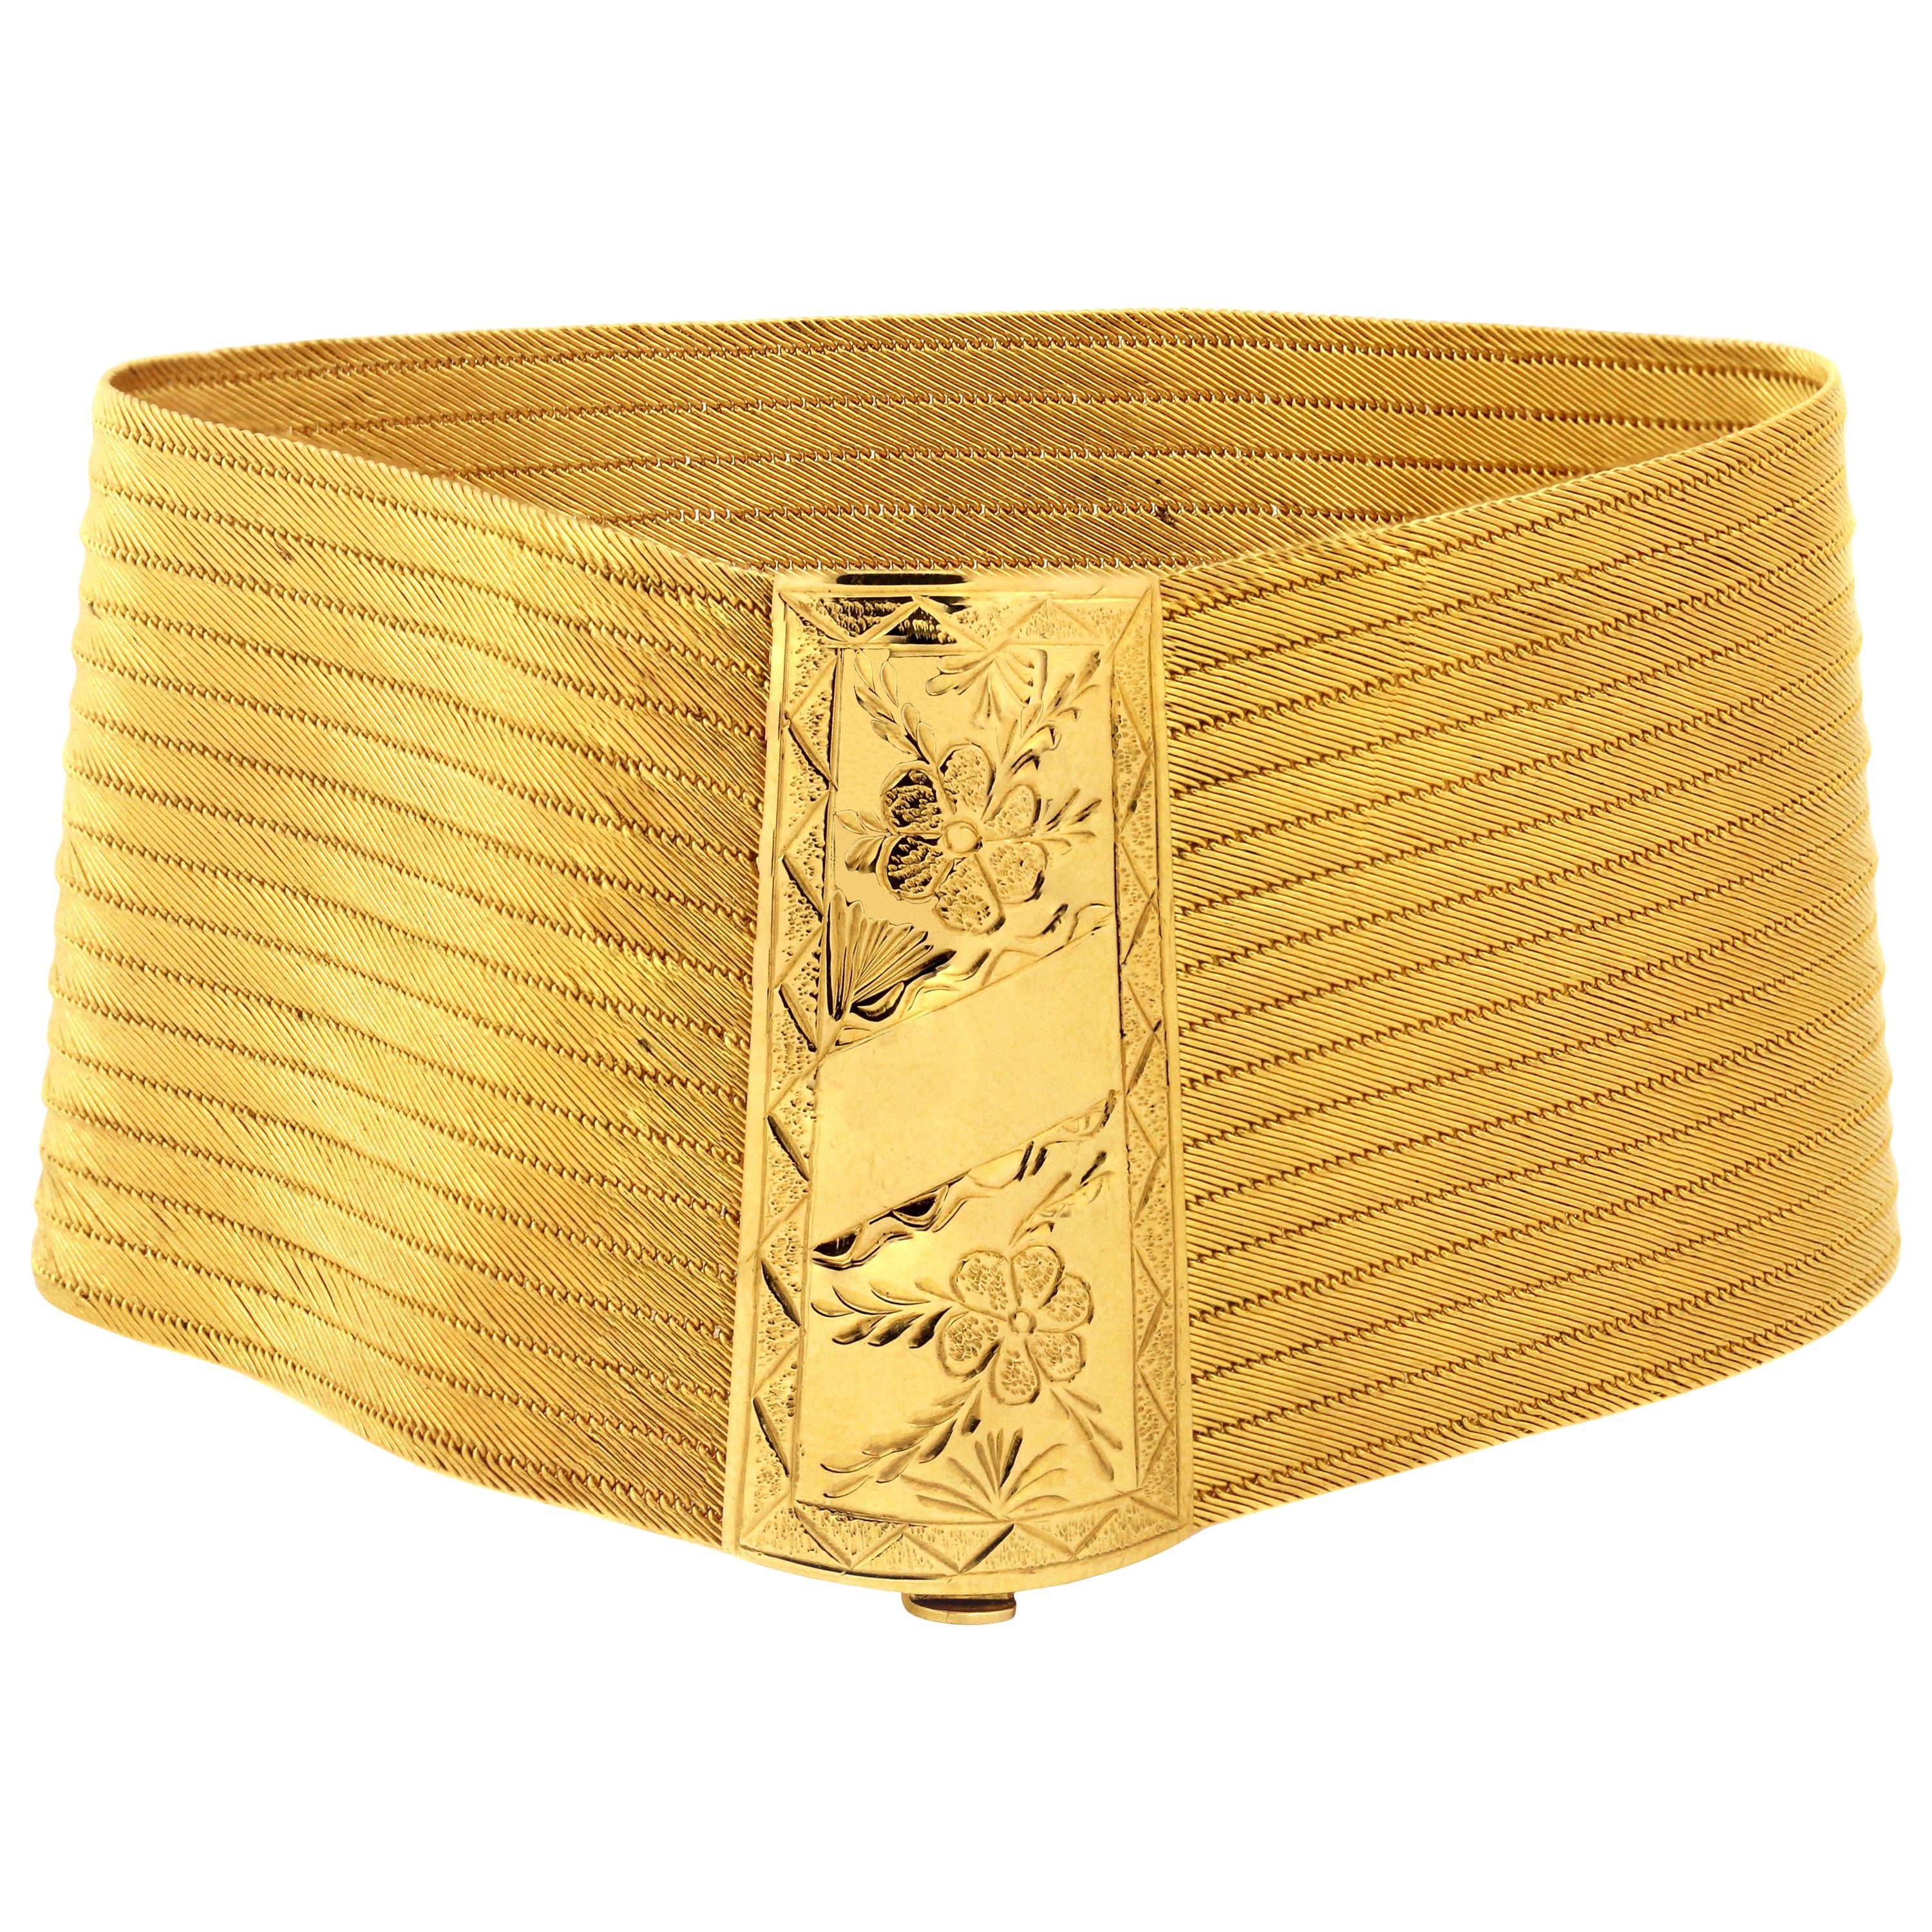 22 Karat Gold Handwoven Engraved Floral Bracelet